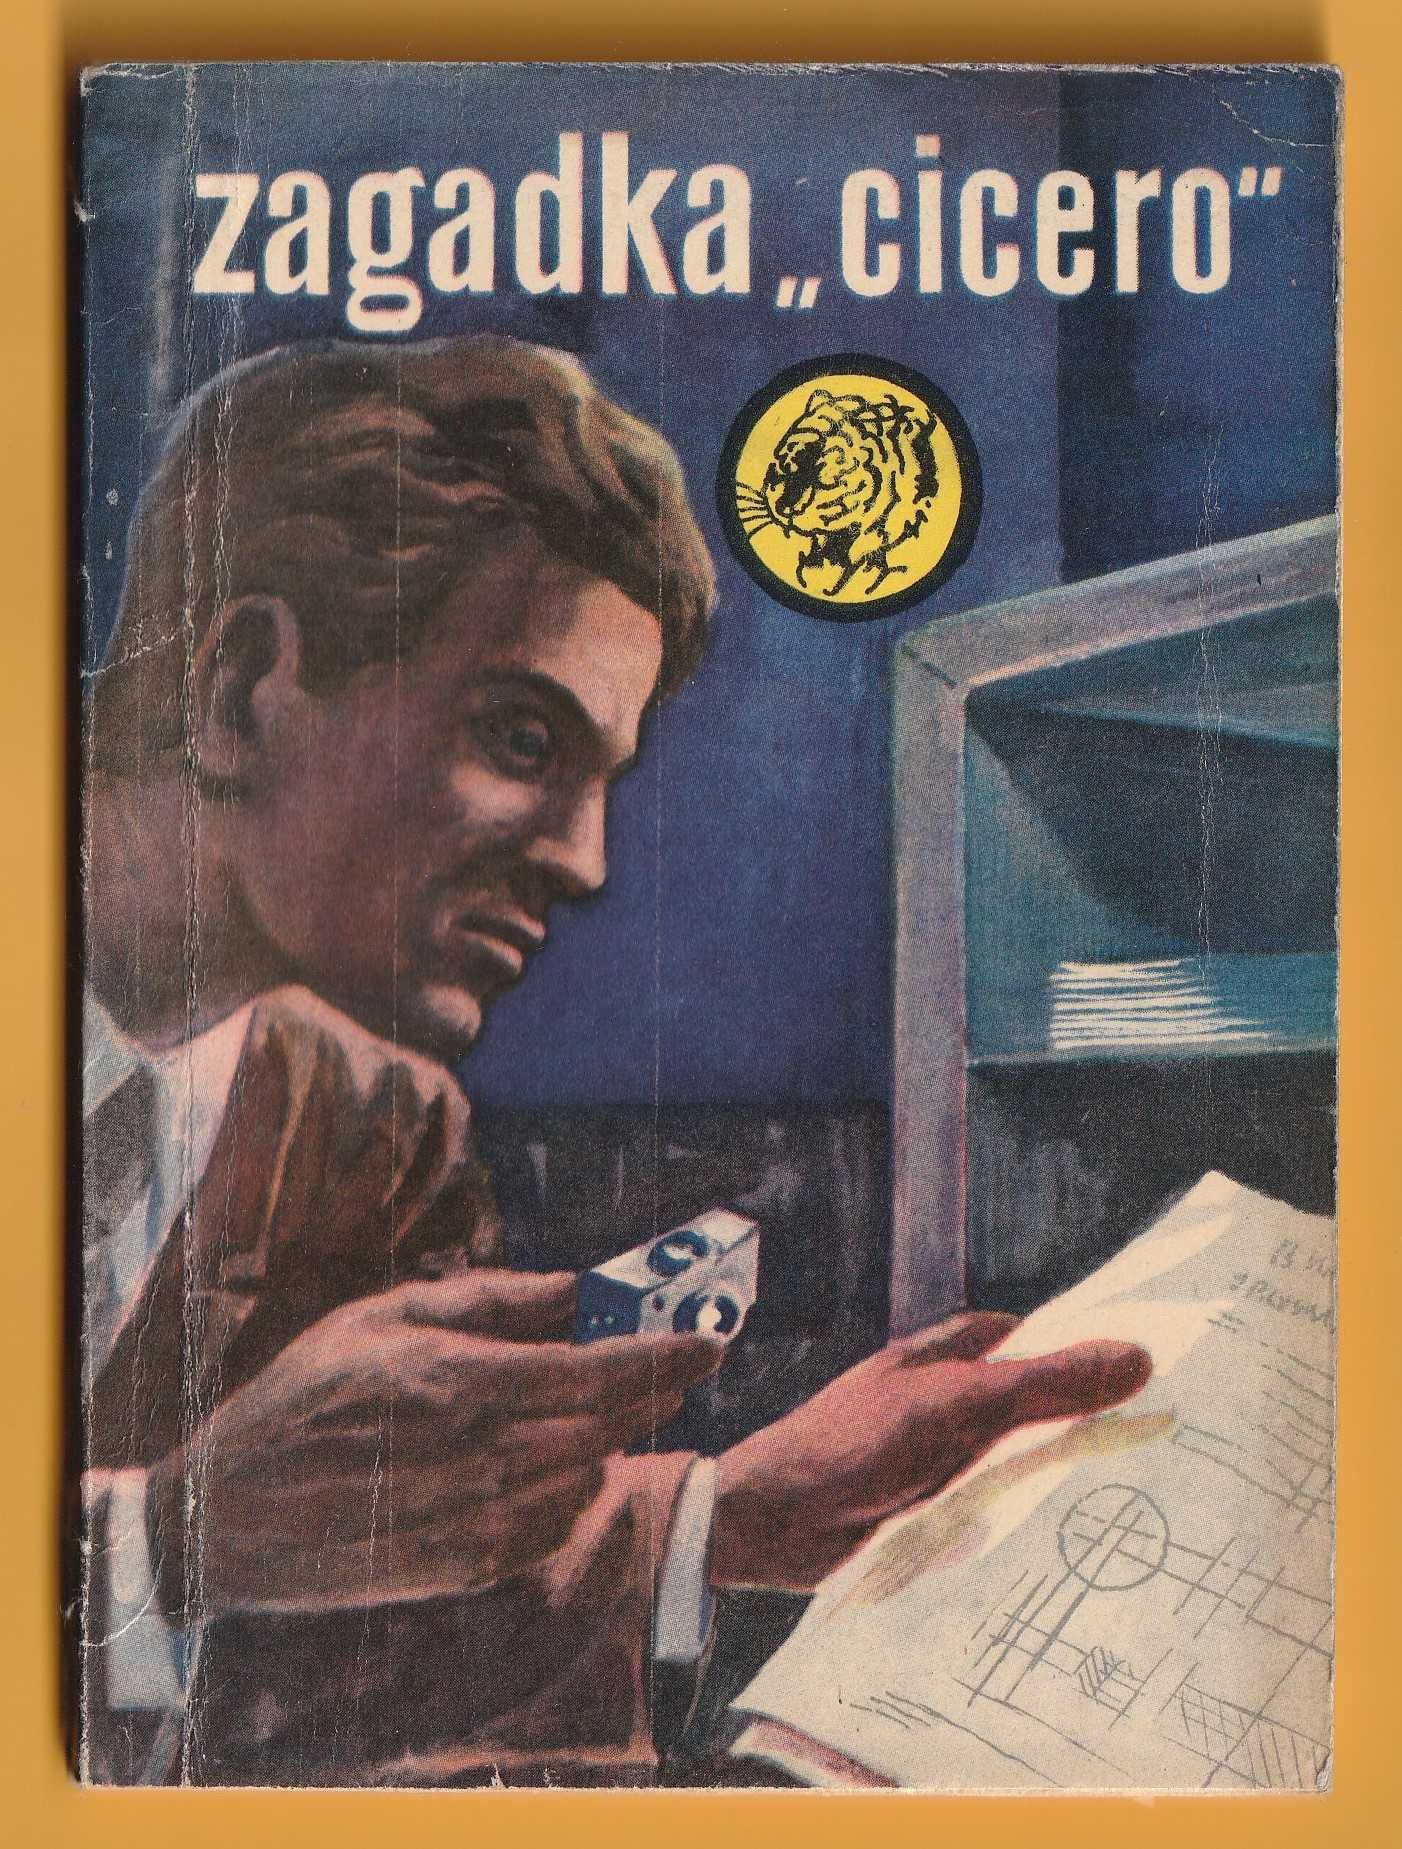 Żółty tygrys - ZAGADKA "CICERO" - 1967